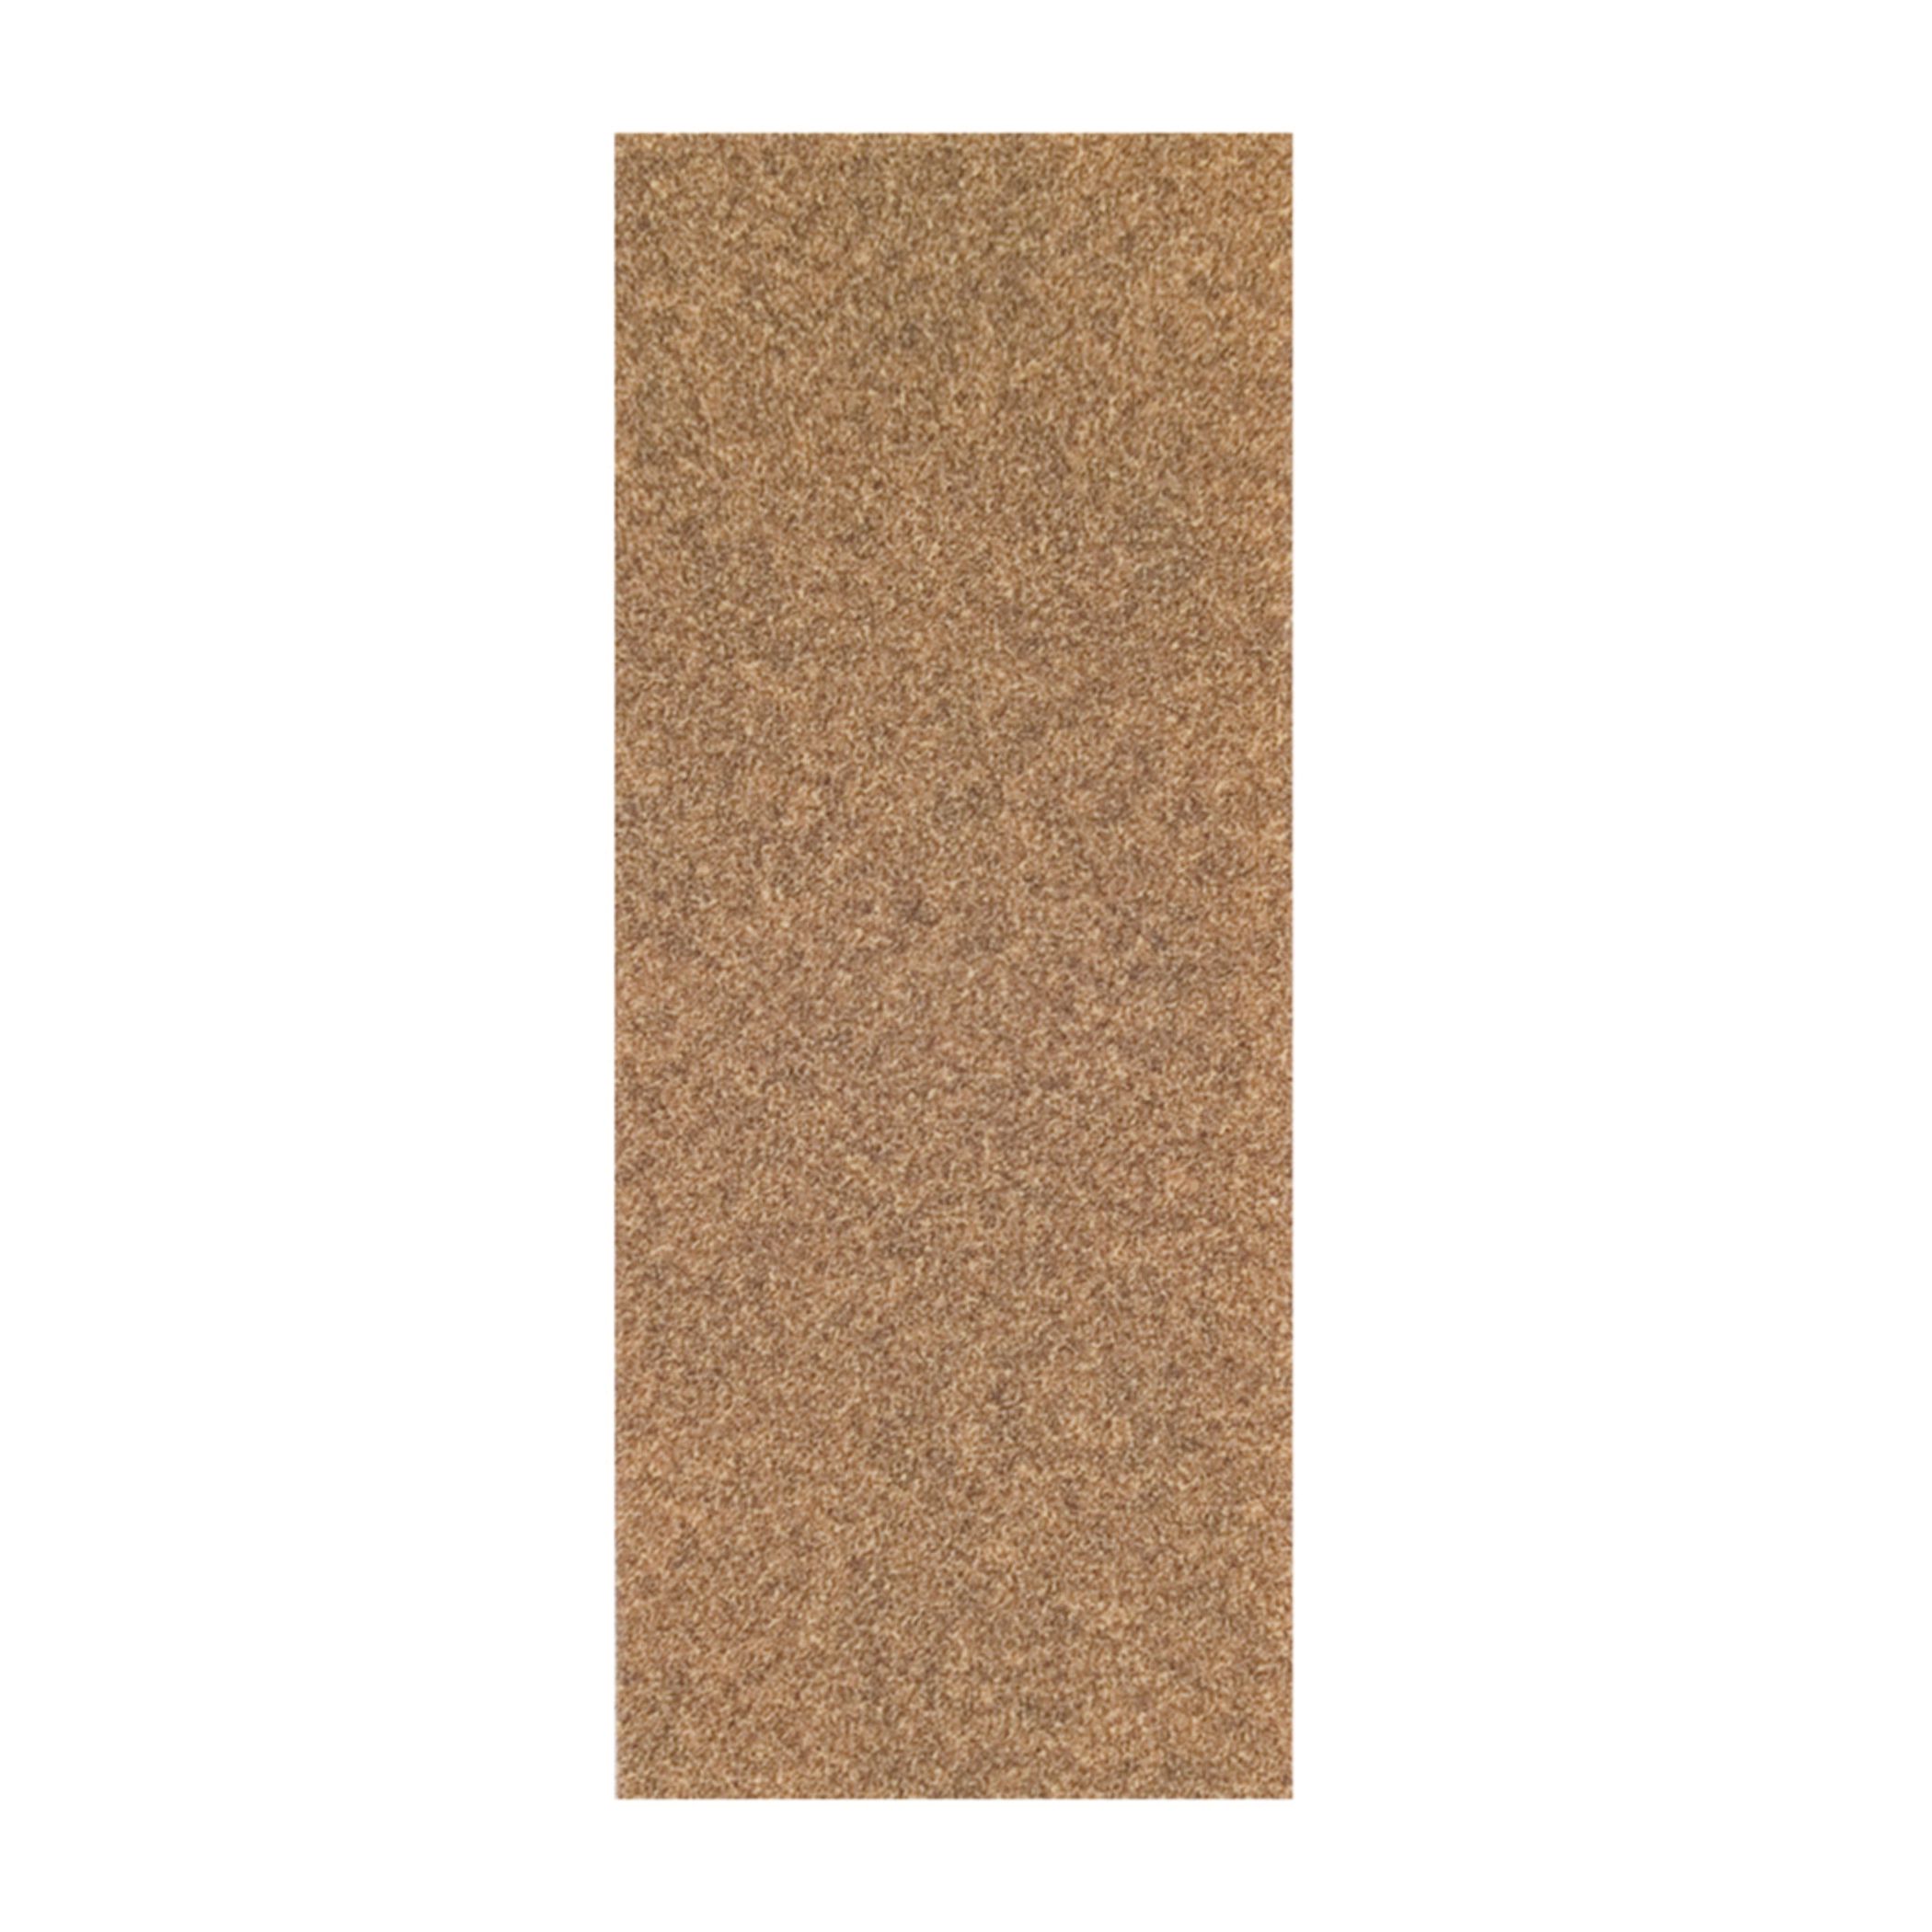 Norton® Adalox® 66261102920 A213 Coated Sandpaper Cut Sheet, 9 in L x 3-2/3 in W, P80 Grit, Coarse Grade, Aluminum Oxide Abrasive, Paper Backing